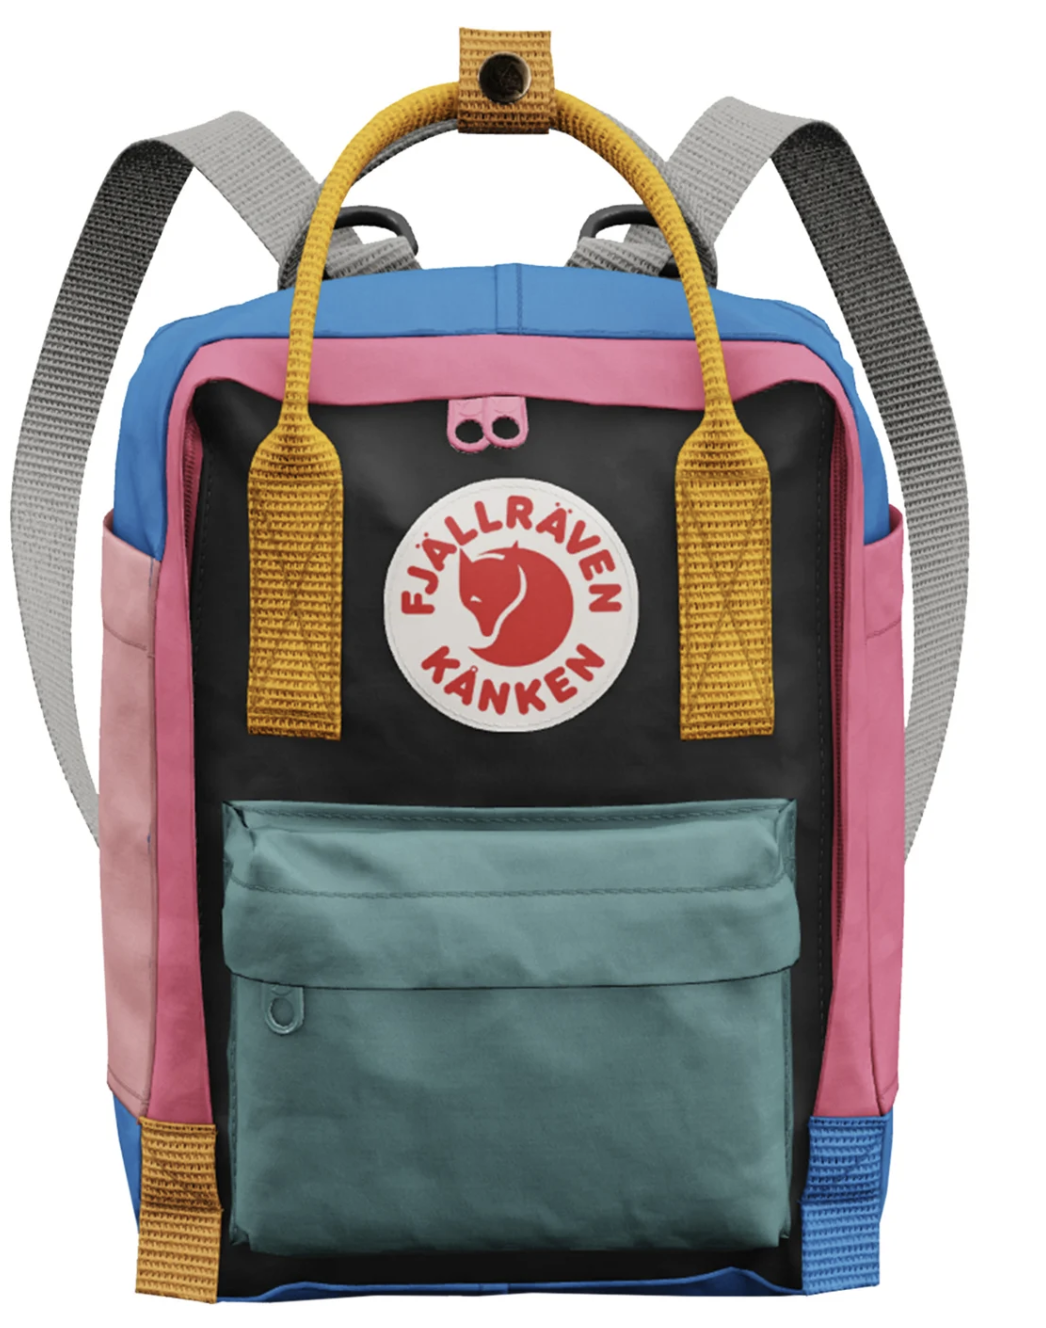 Un sac à dos, indispensable pour mettre toutes les petites affaires des kids - Modèle Kanken Me Mini